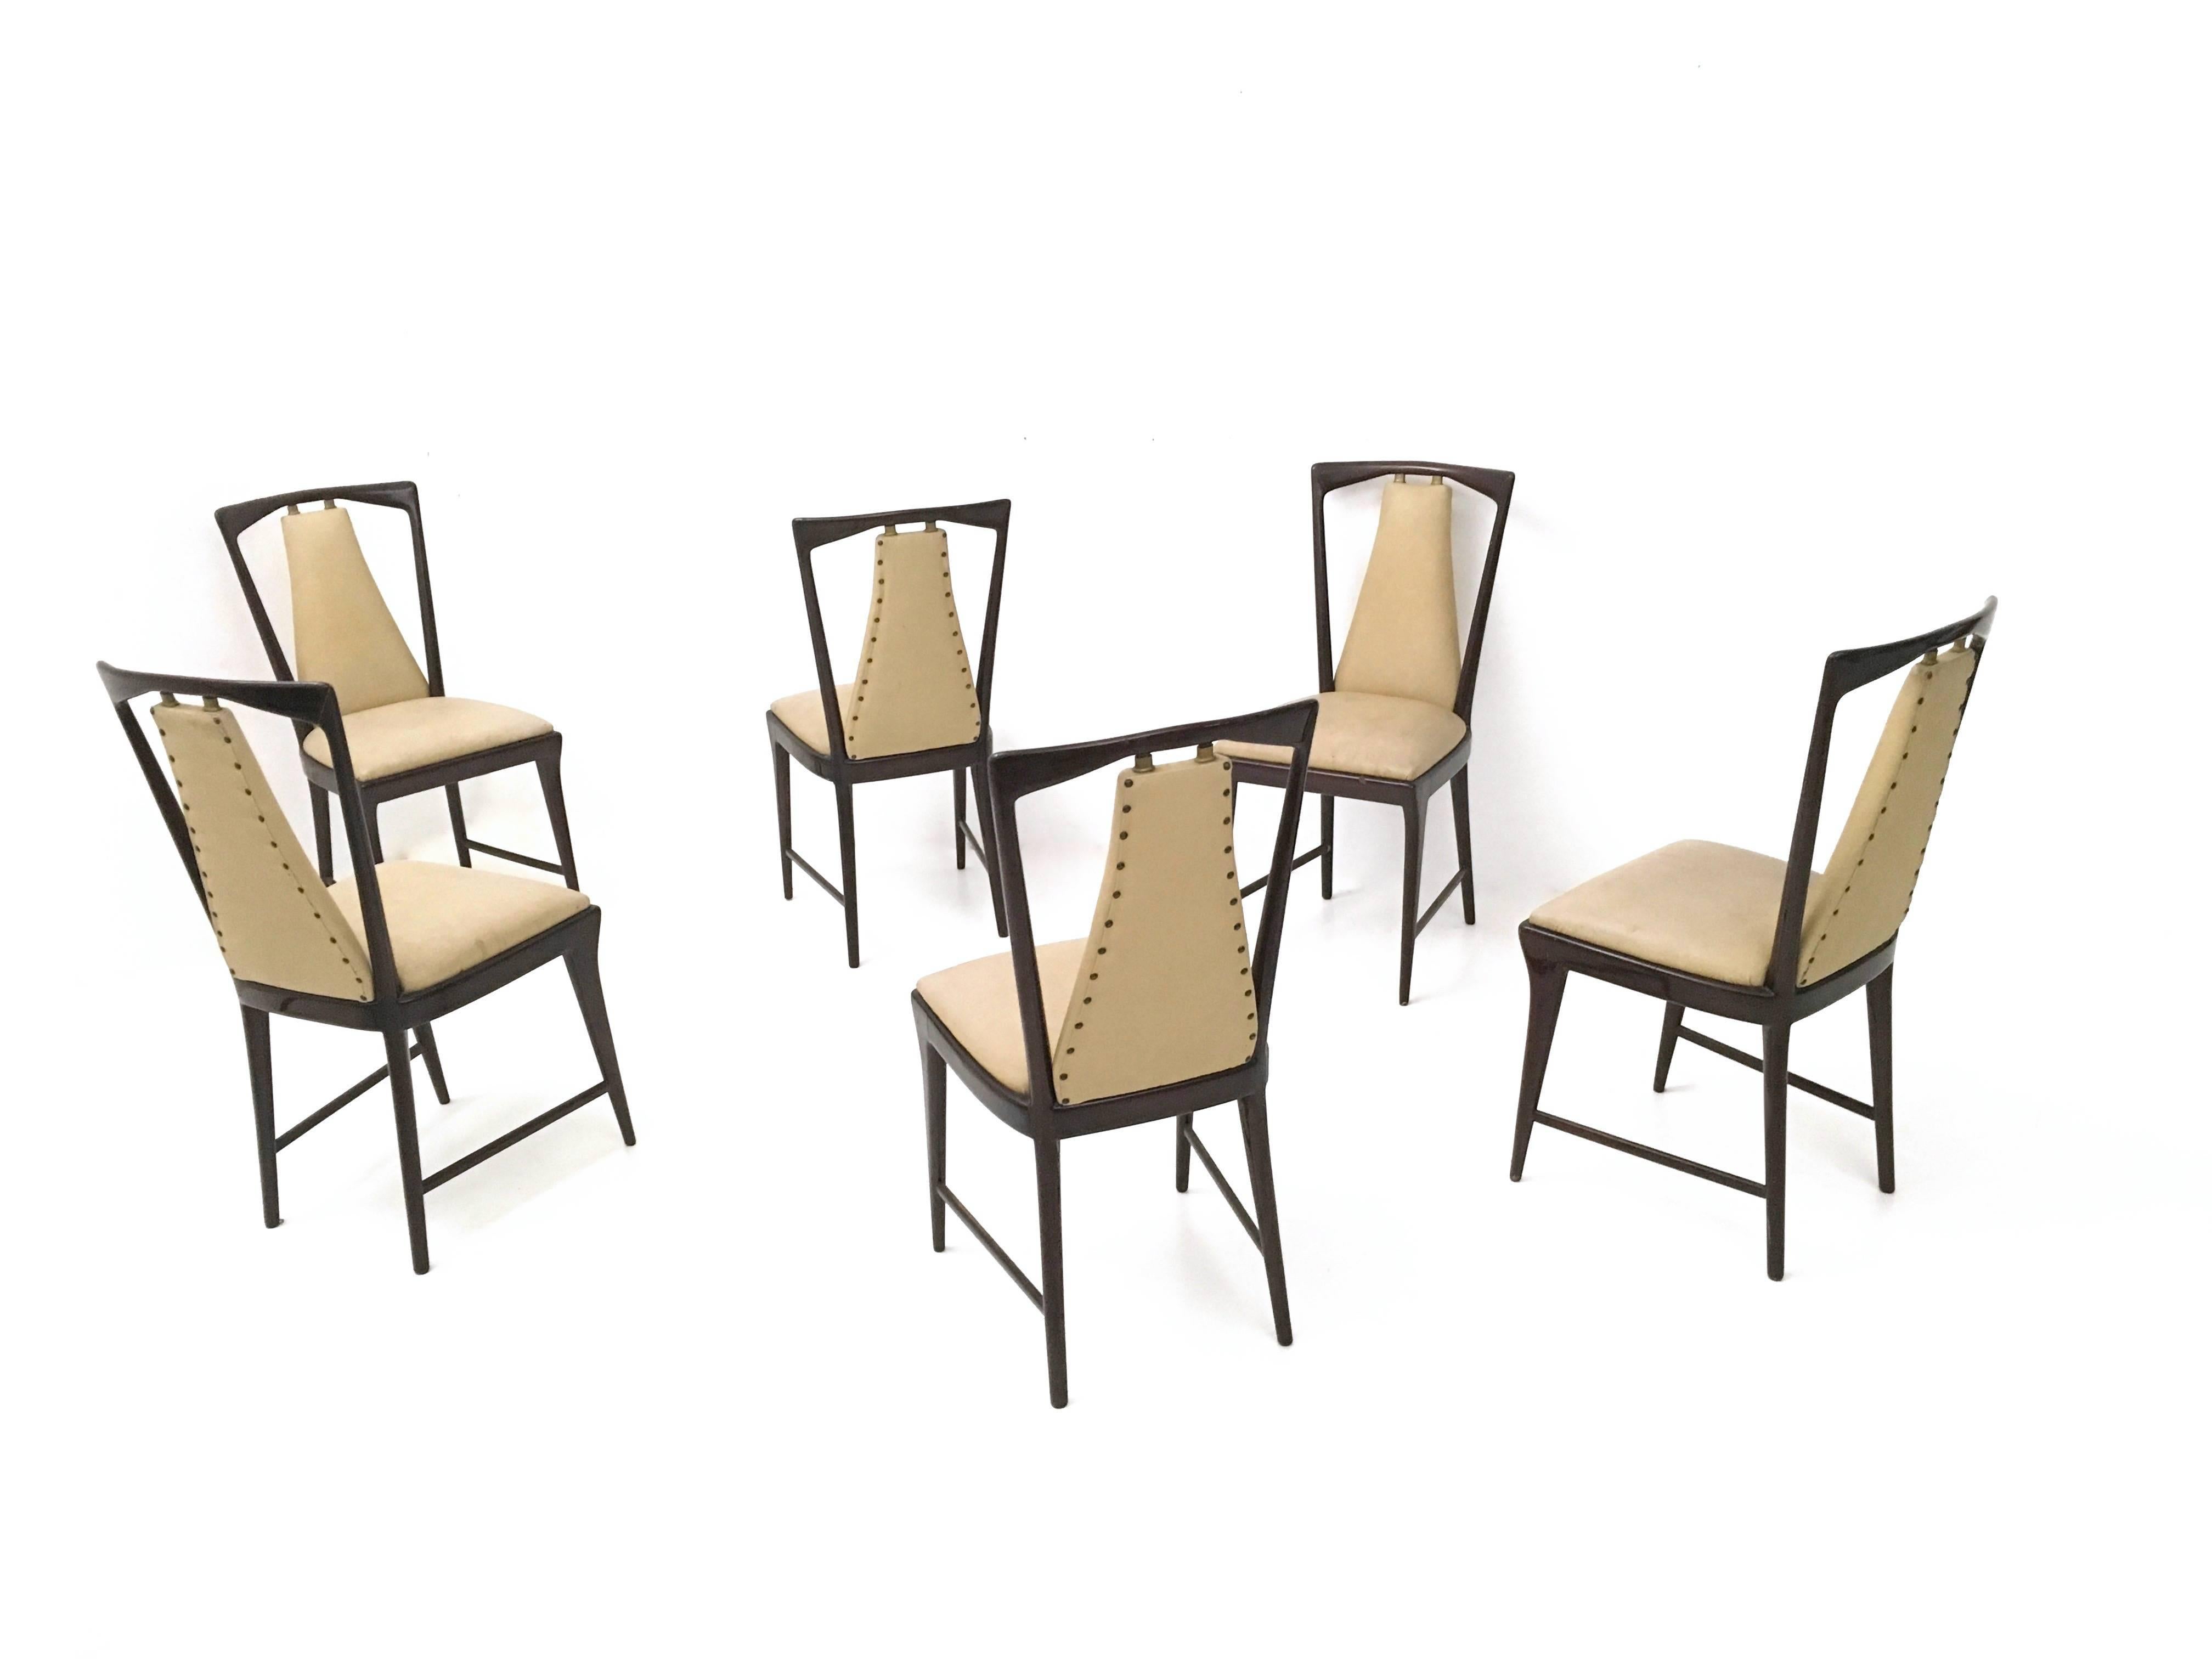 Mid-20th Century Set of Six Mahogany and Skai Chairs, style of Osvaldo Borsani, Italy, 1950s